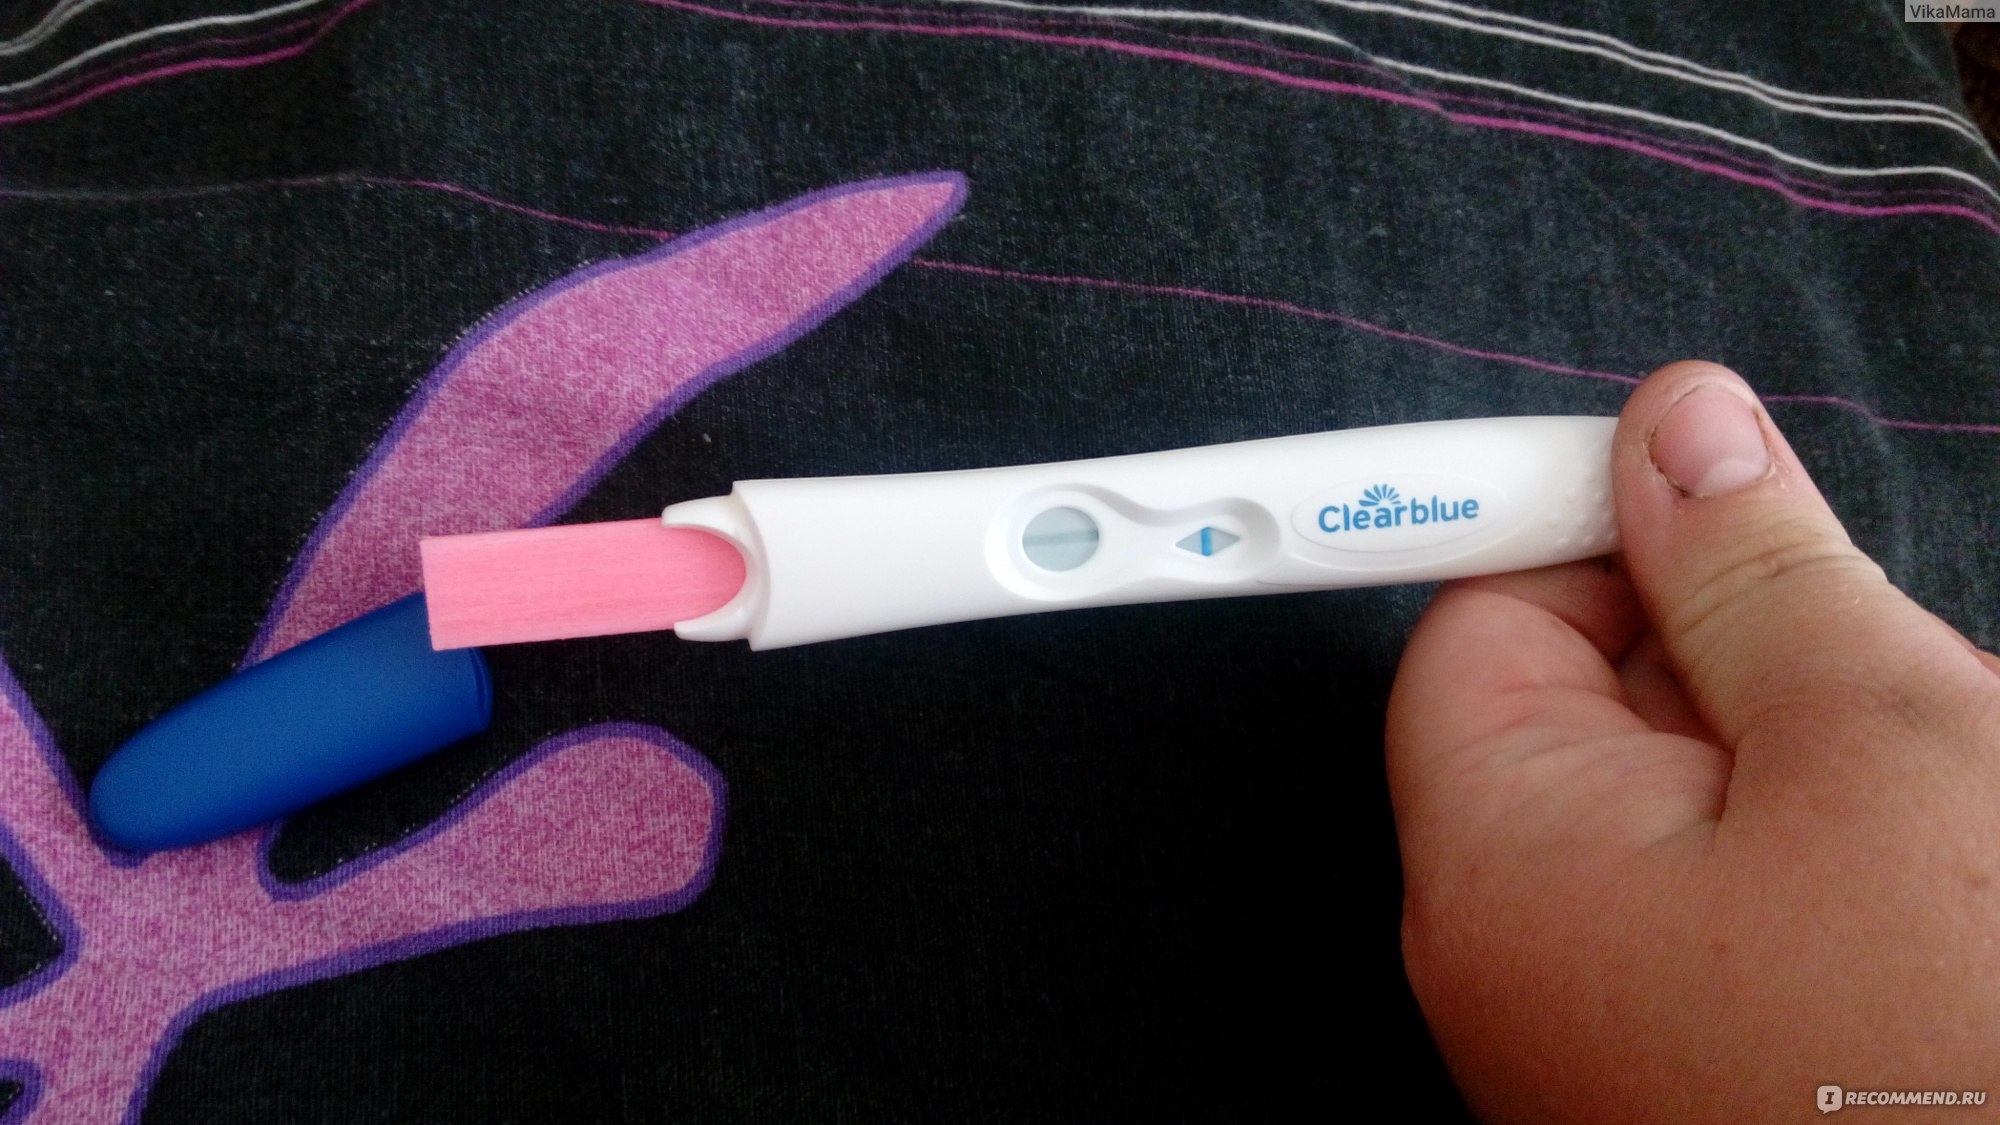 Тесты на беременность ClearBlue Easy с окрашивающимся наконечником фото